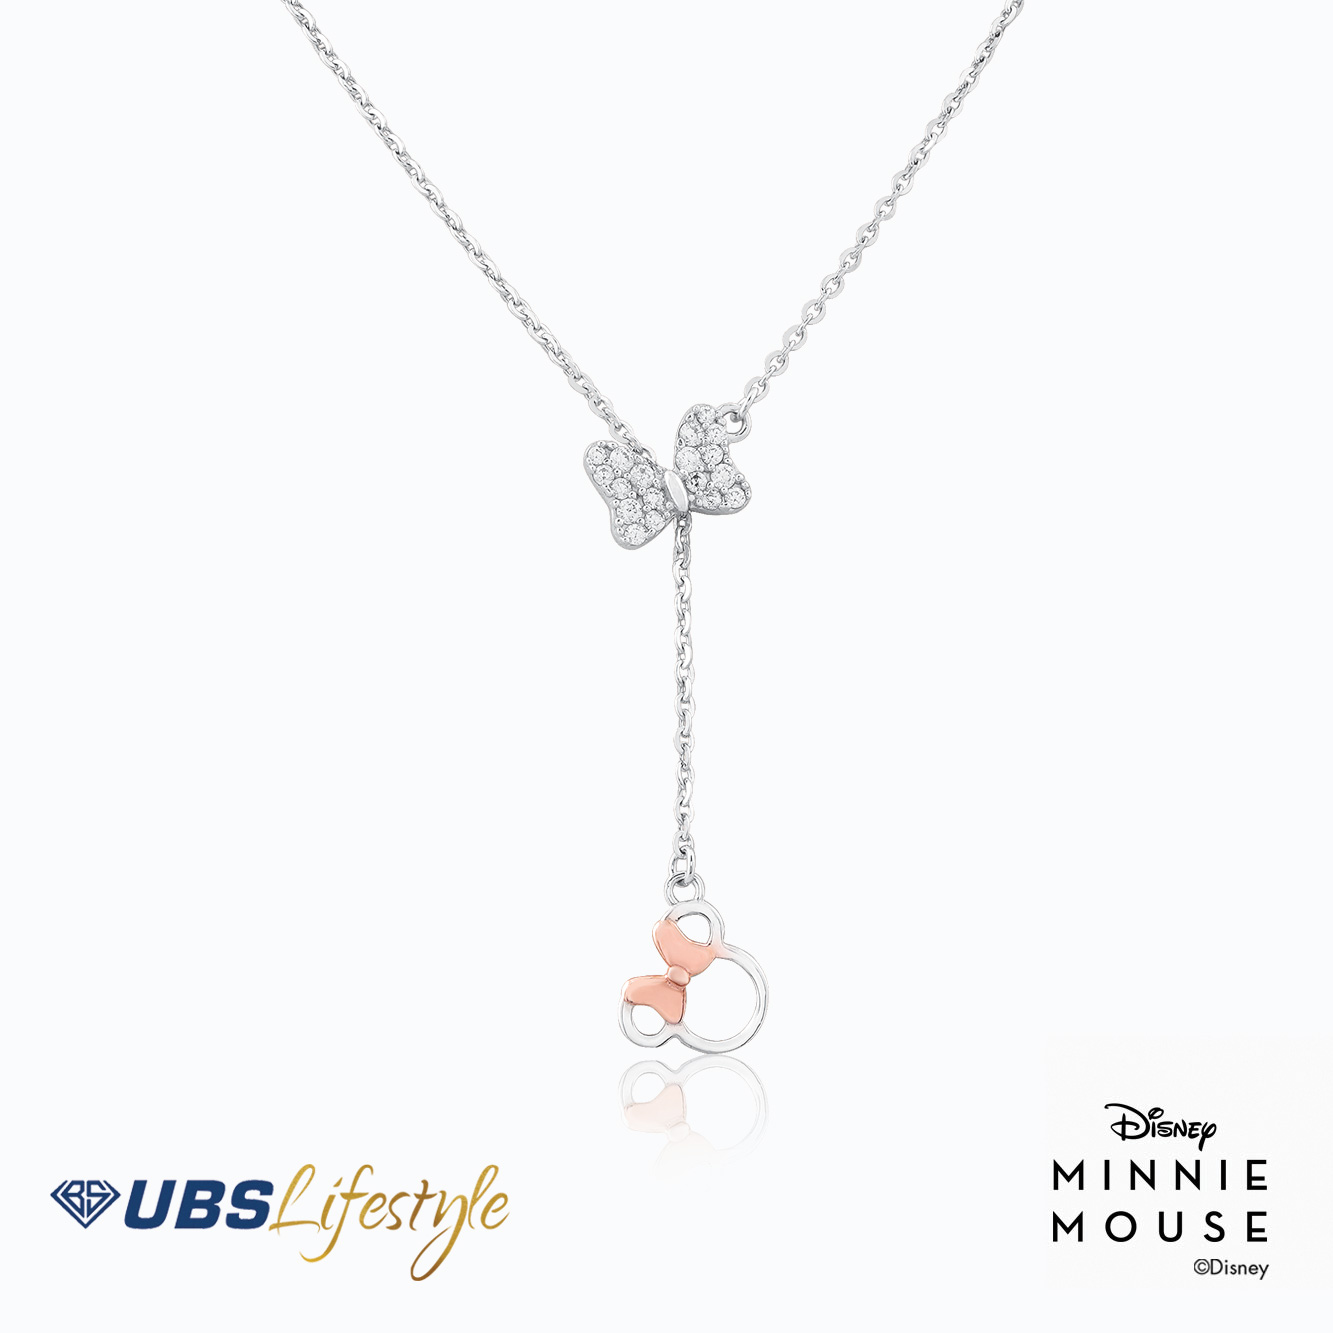 UBS Kalung Emas Disney Minnie Mouse - Kky0121Bp - 17K